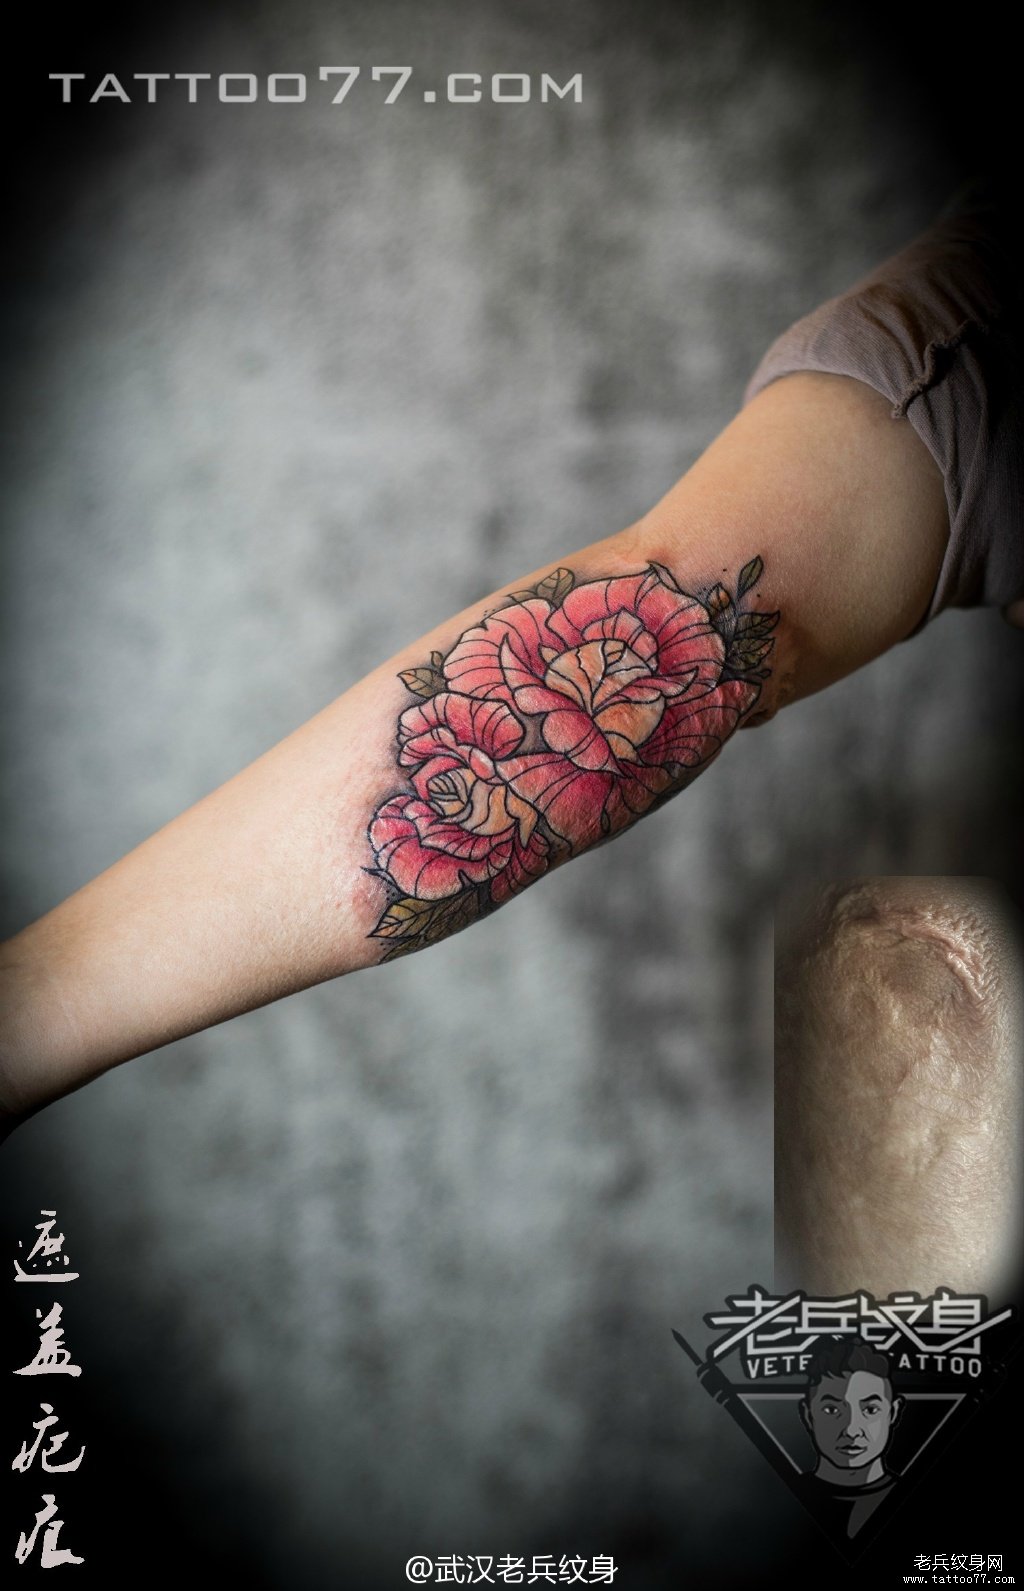 手臂内侧玫瑰花纹身图案作品遮盖疤痕